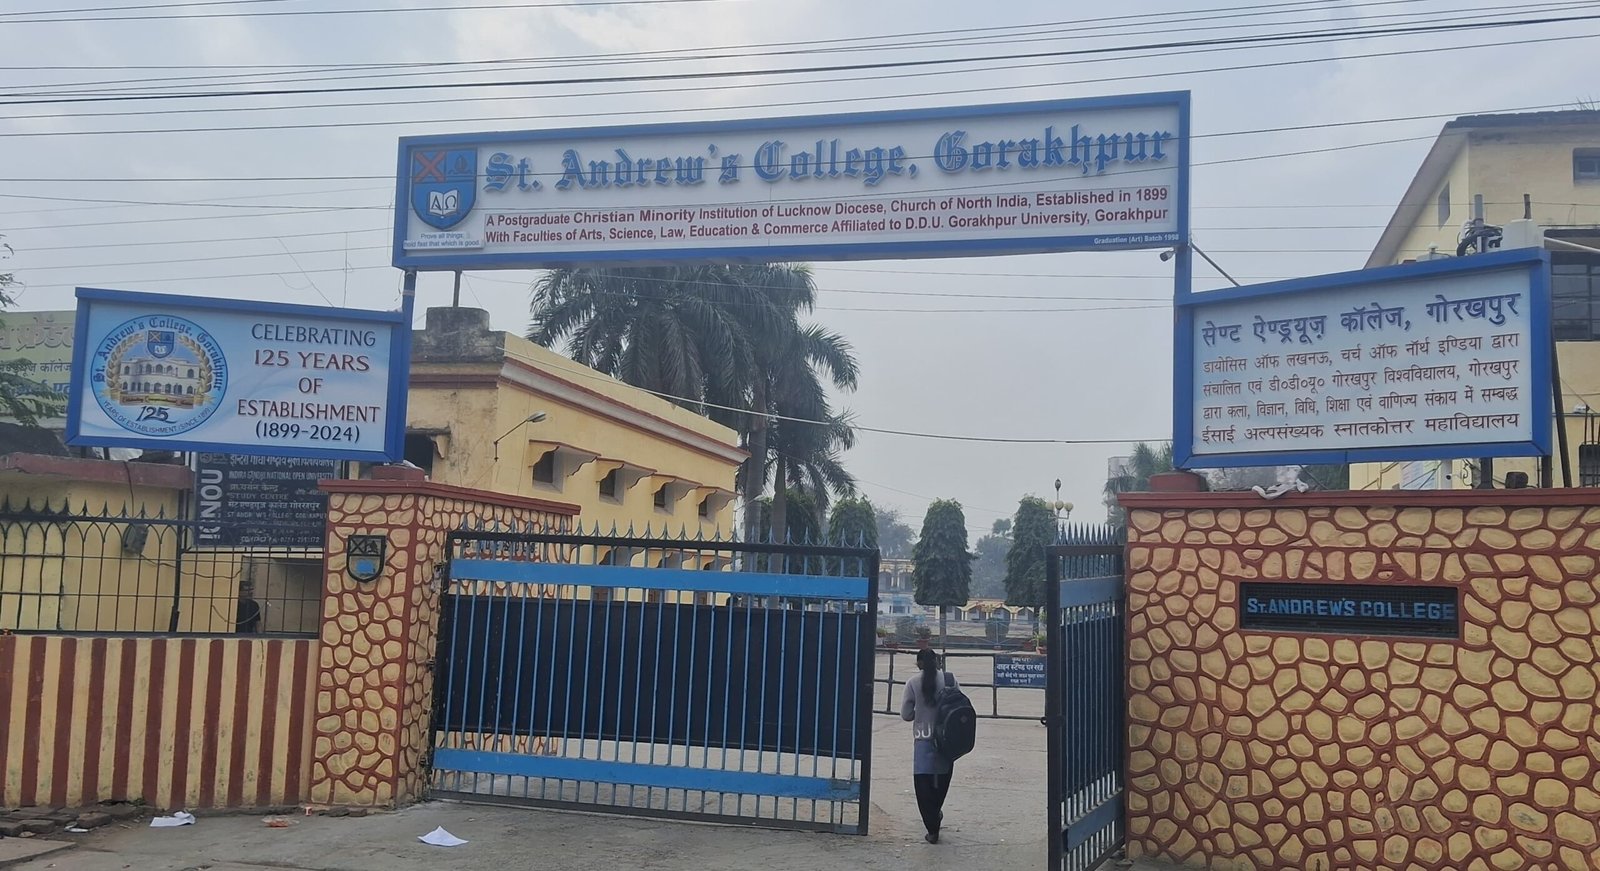 St. Andrew's College Gorakhpur - जानिए कब से संचालित होगी स्नातक, परास्नातक व विधि तृतीय व पंचम सेमेस्टर की कक्षाएं